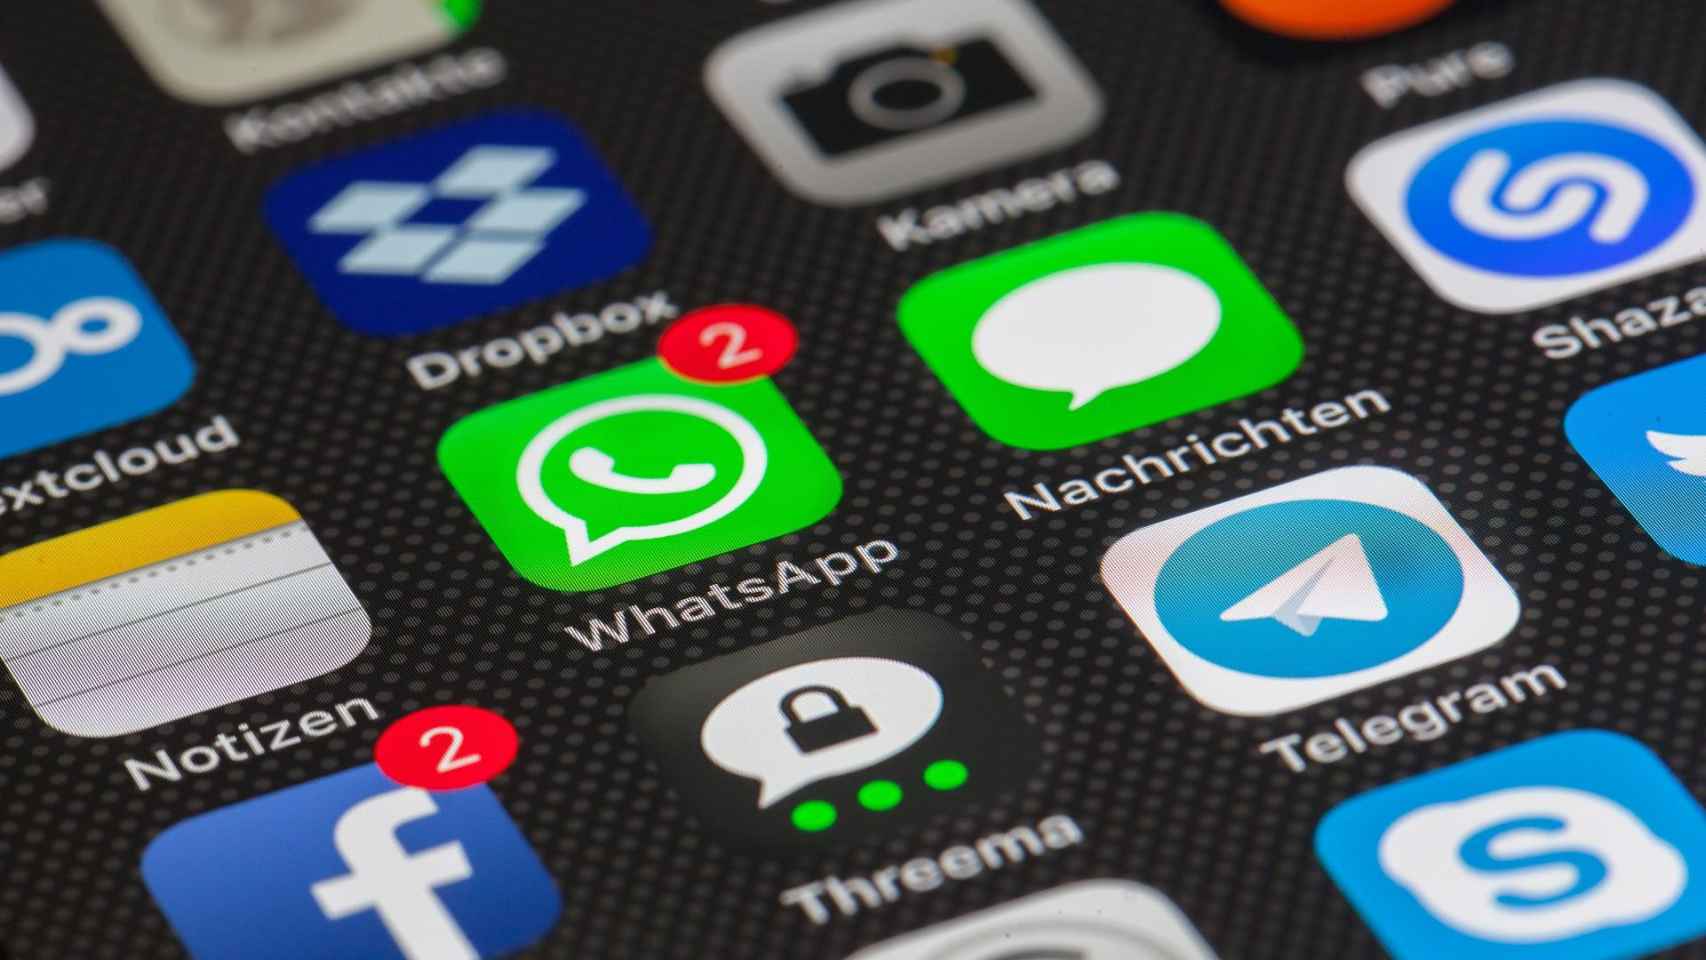 Pantalla de móvil con las aplicaciones de WhatsApp, Facebook e Instagram, aplicaciones que han caído en todo el mundo / PIXABAY